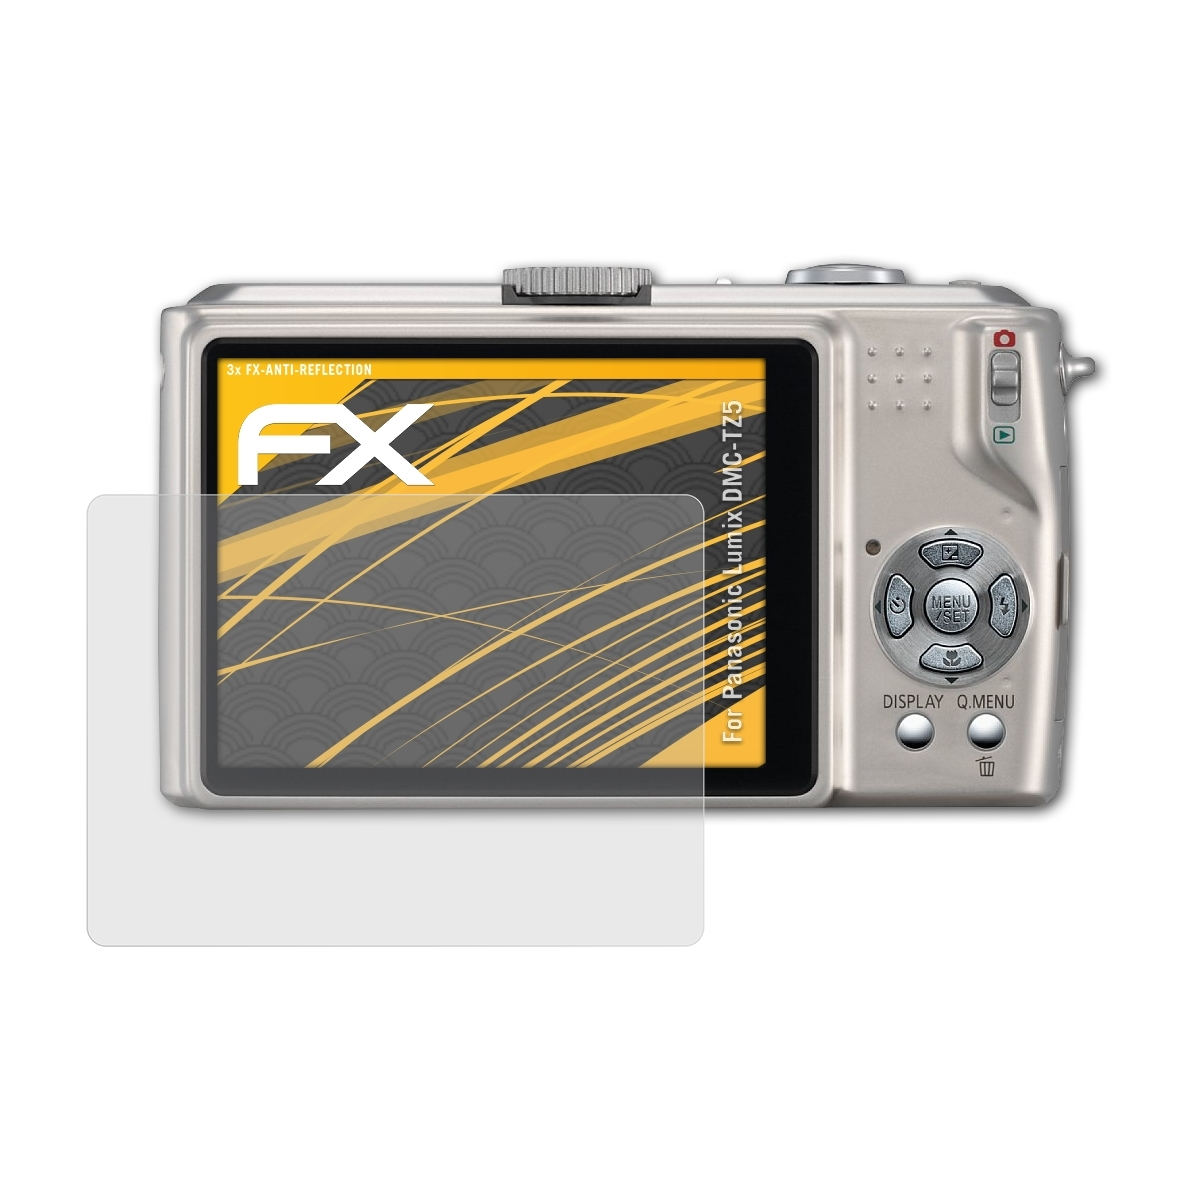 Lumix Displayschutz(für ATFOLIX 3x Panasonic FX-Antireflex DMC-TZ5)